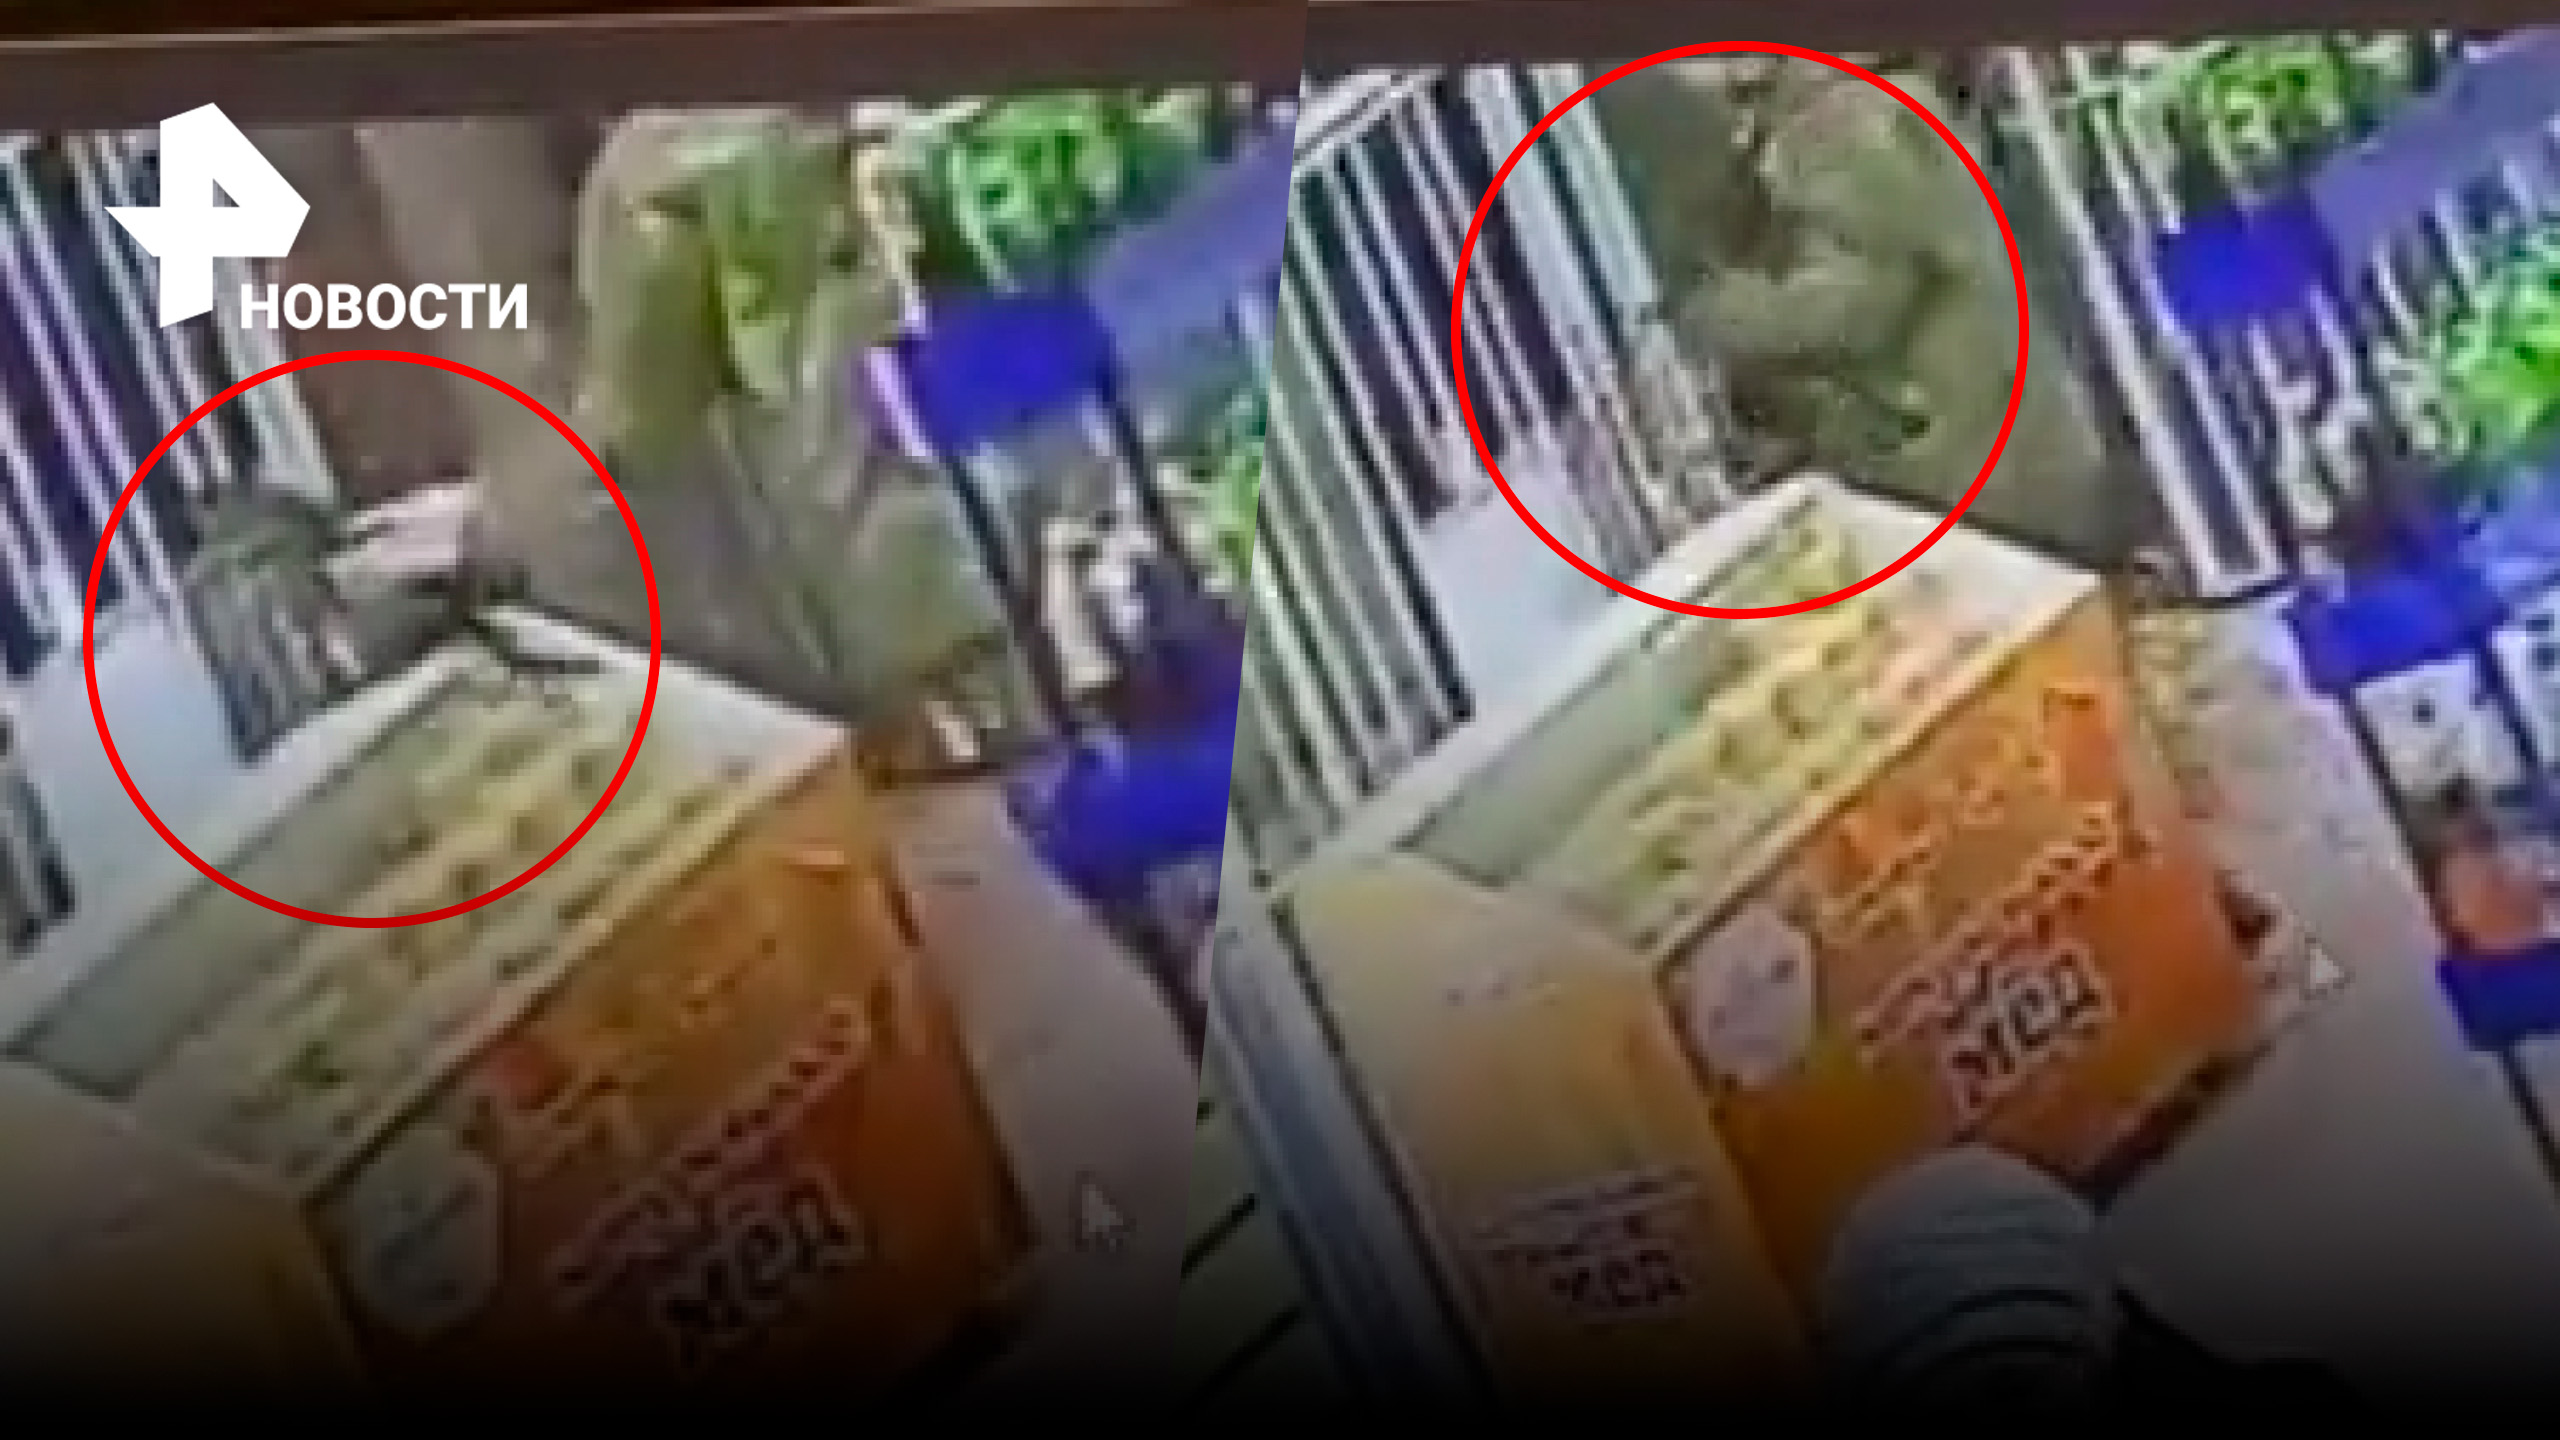 Мужчина в камуфляже украл из магазина местного любимца Тимошку / РЕН Новости